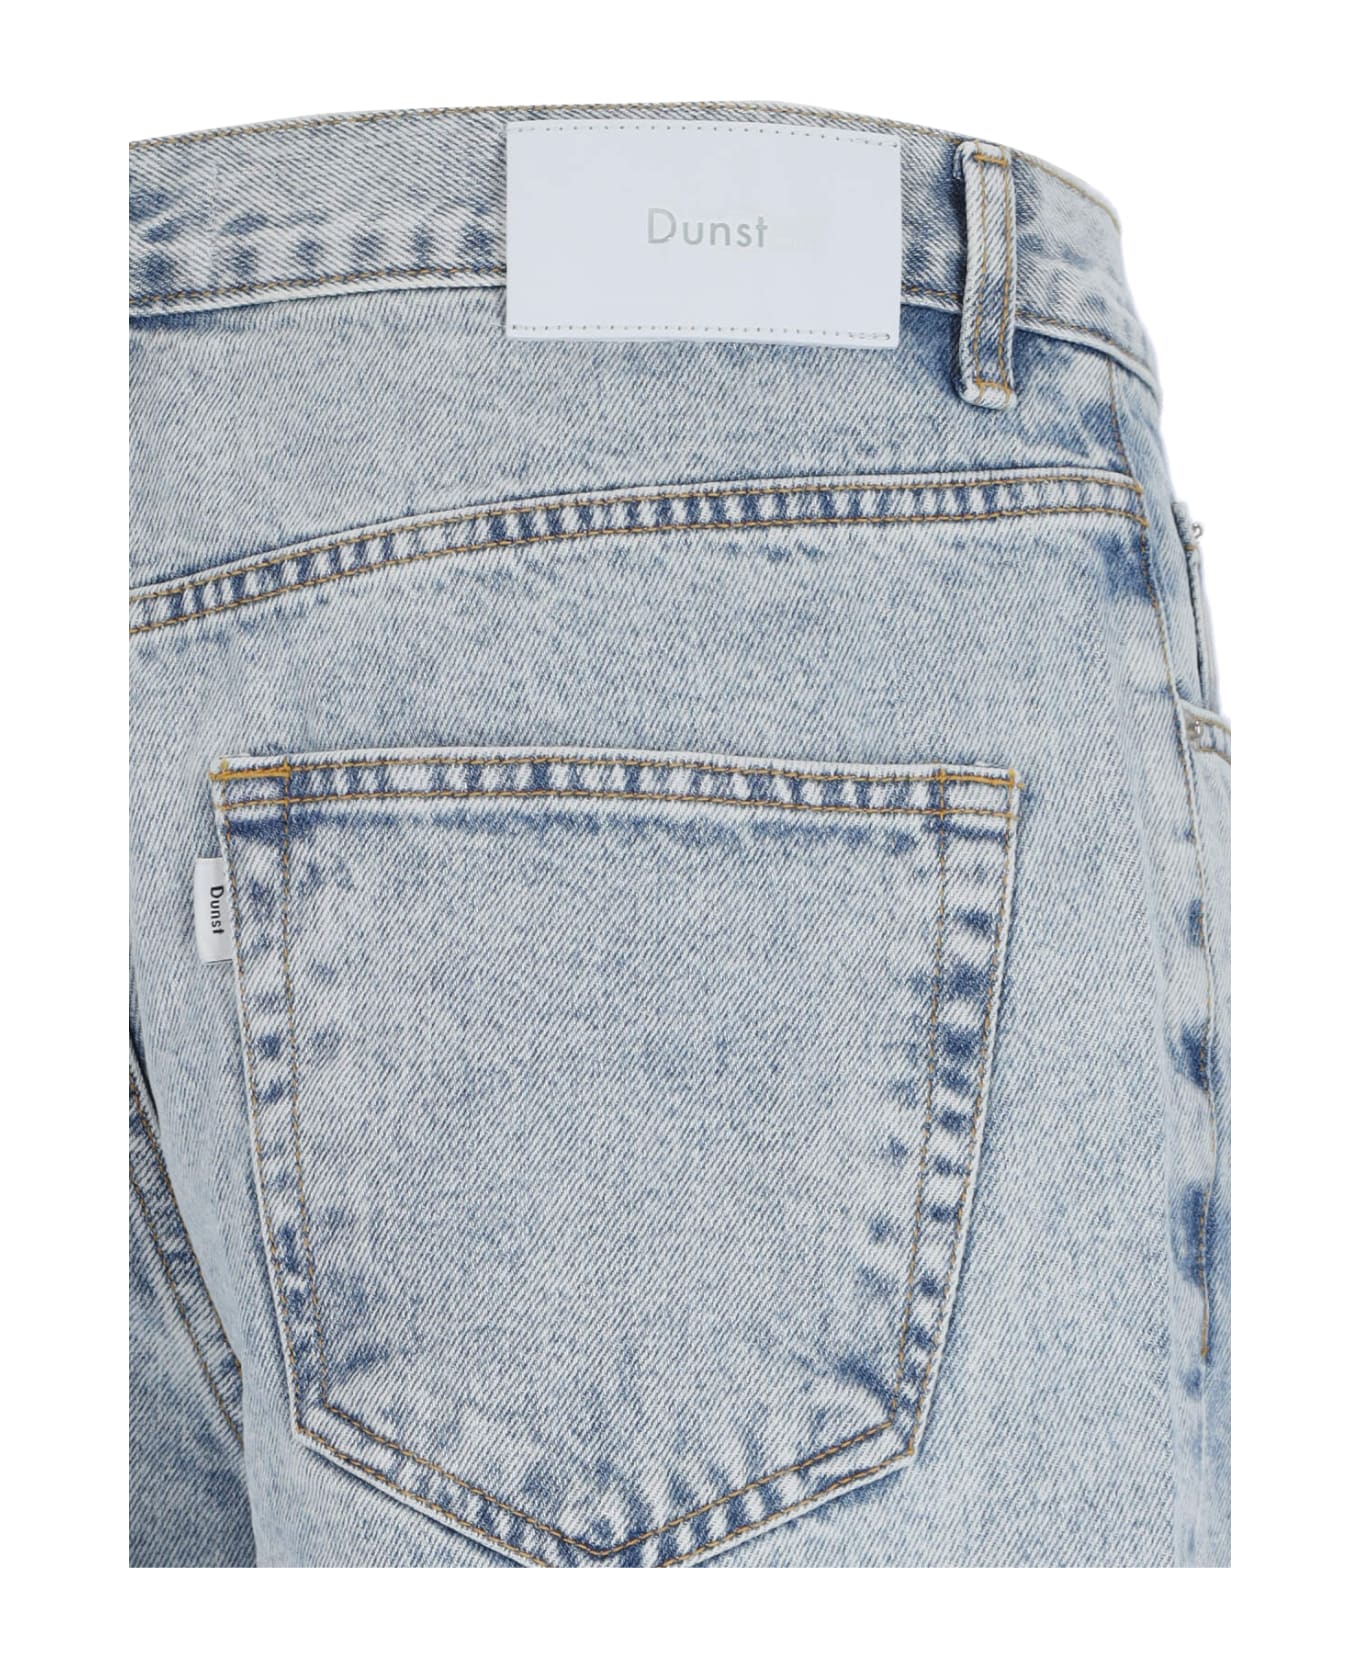 Dunst Wide Jeans - Light Blue name:463